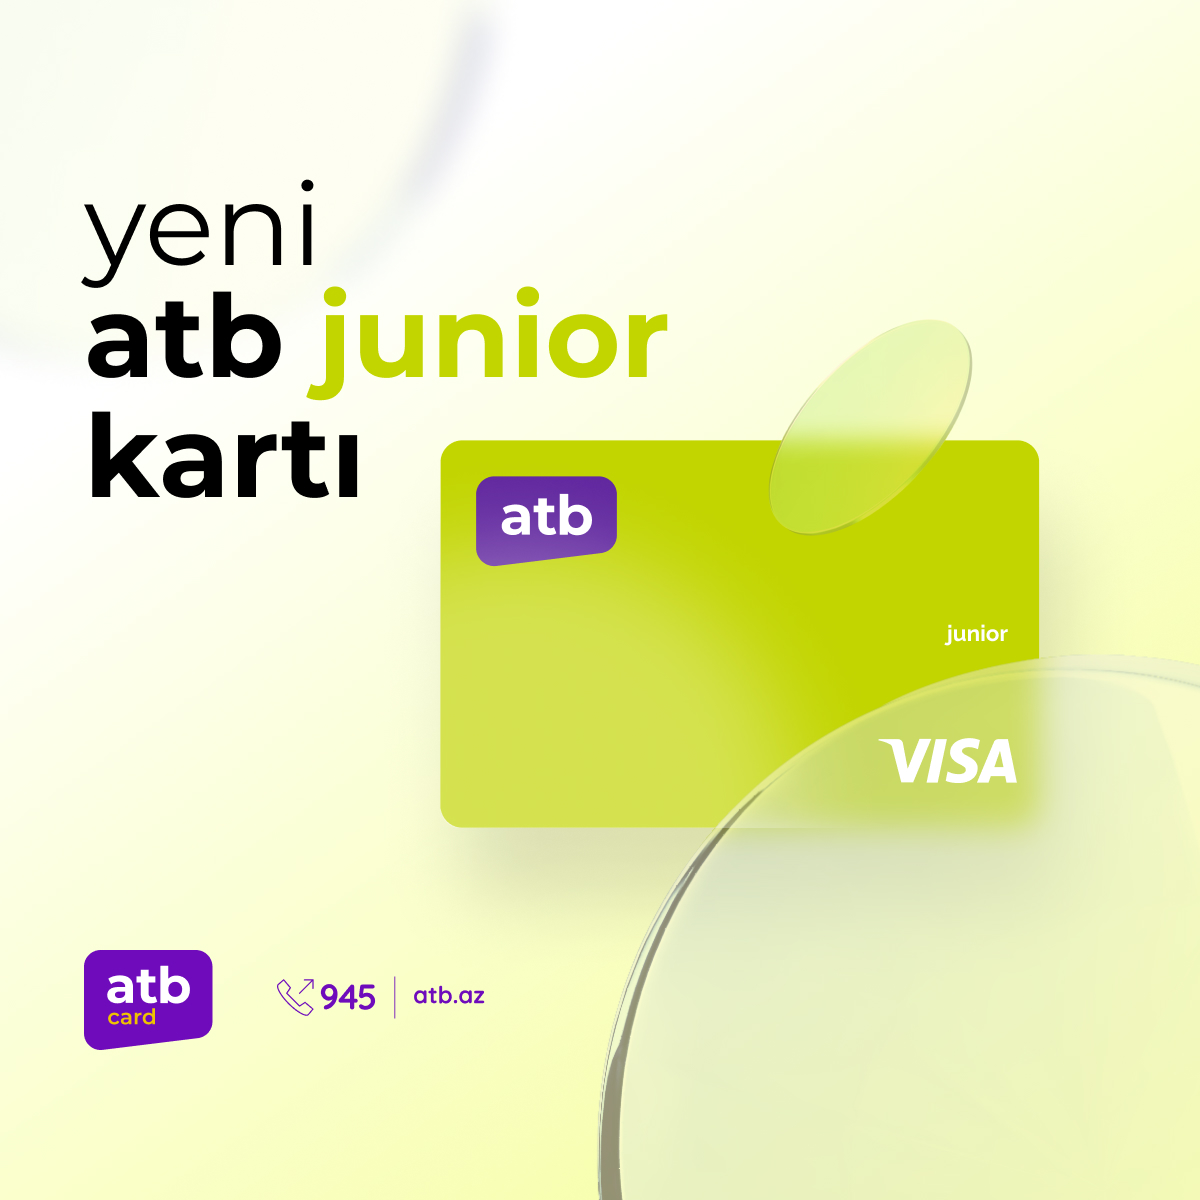 Azer Turk Bank представляет карту для детей atb Junior